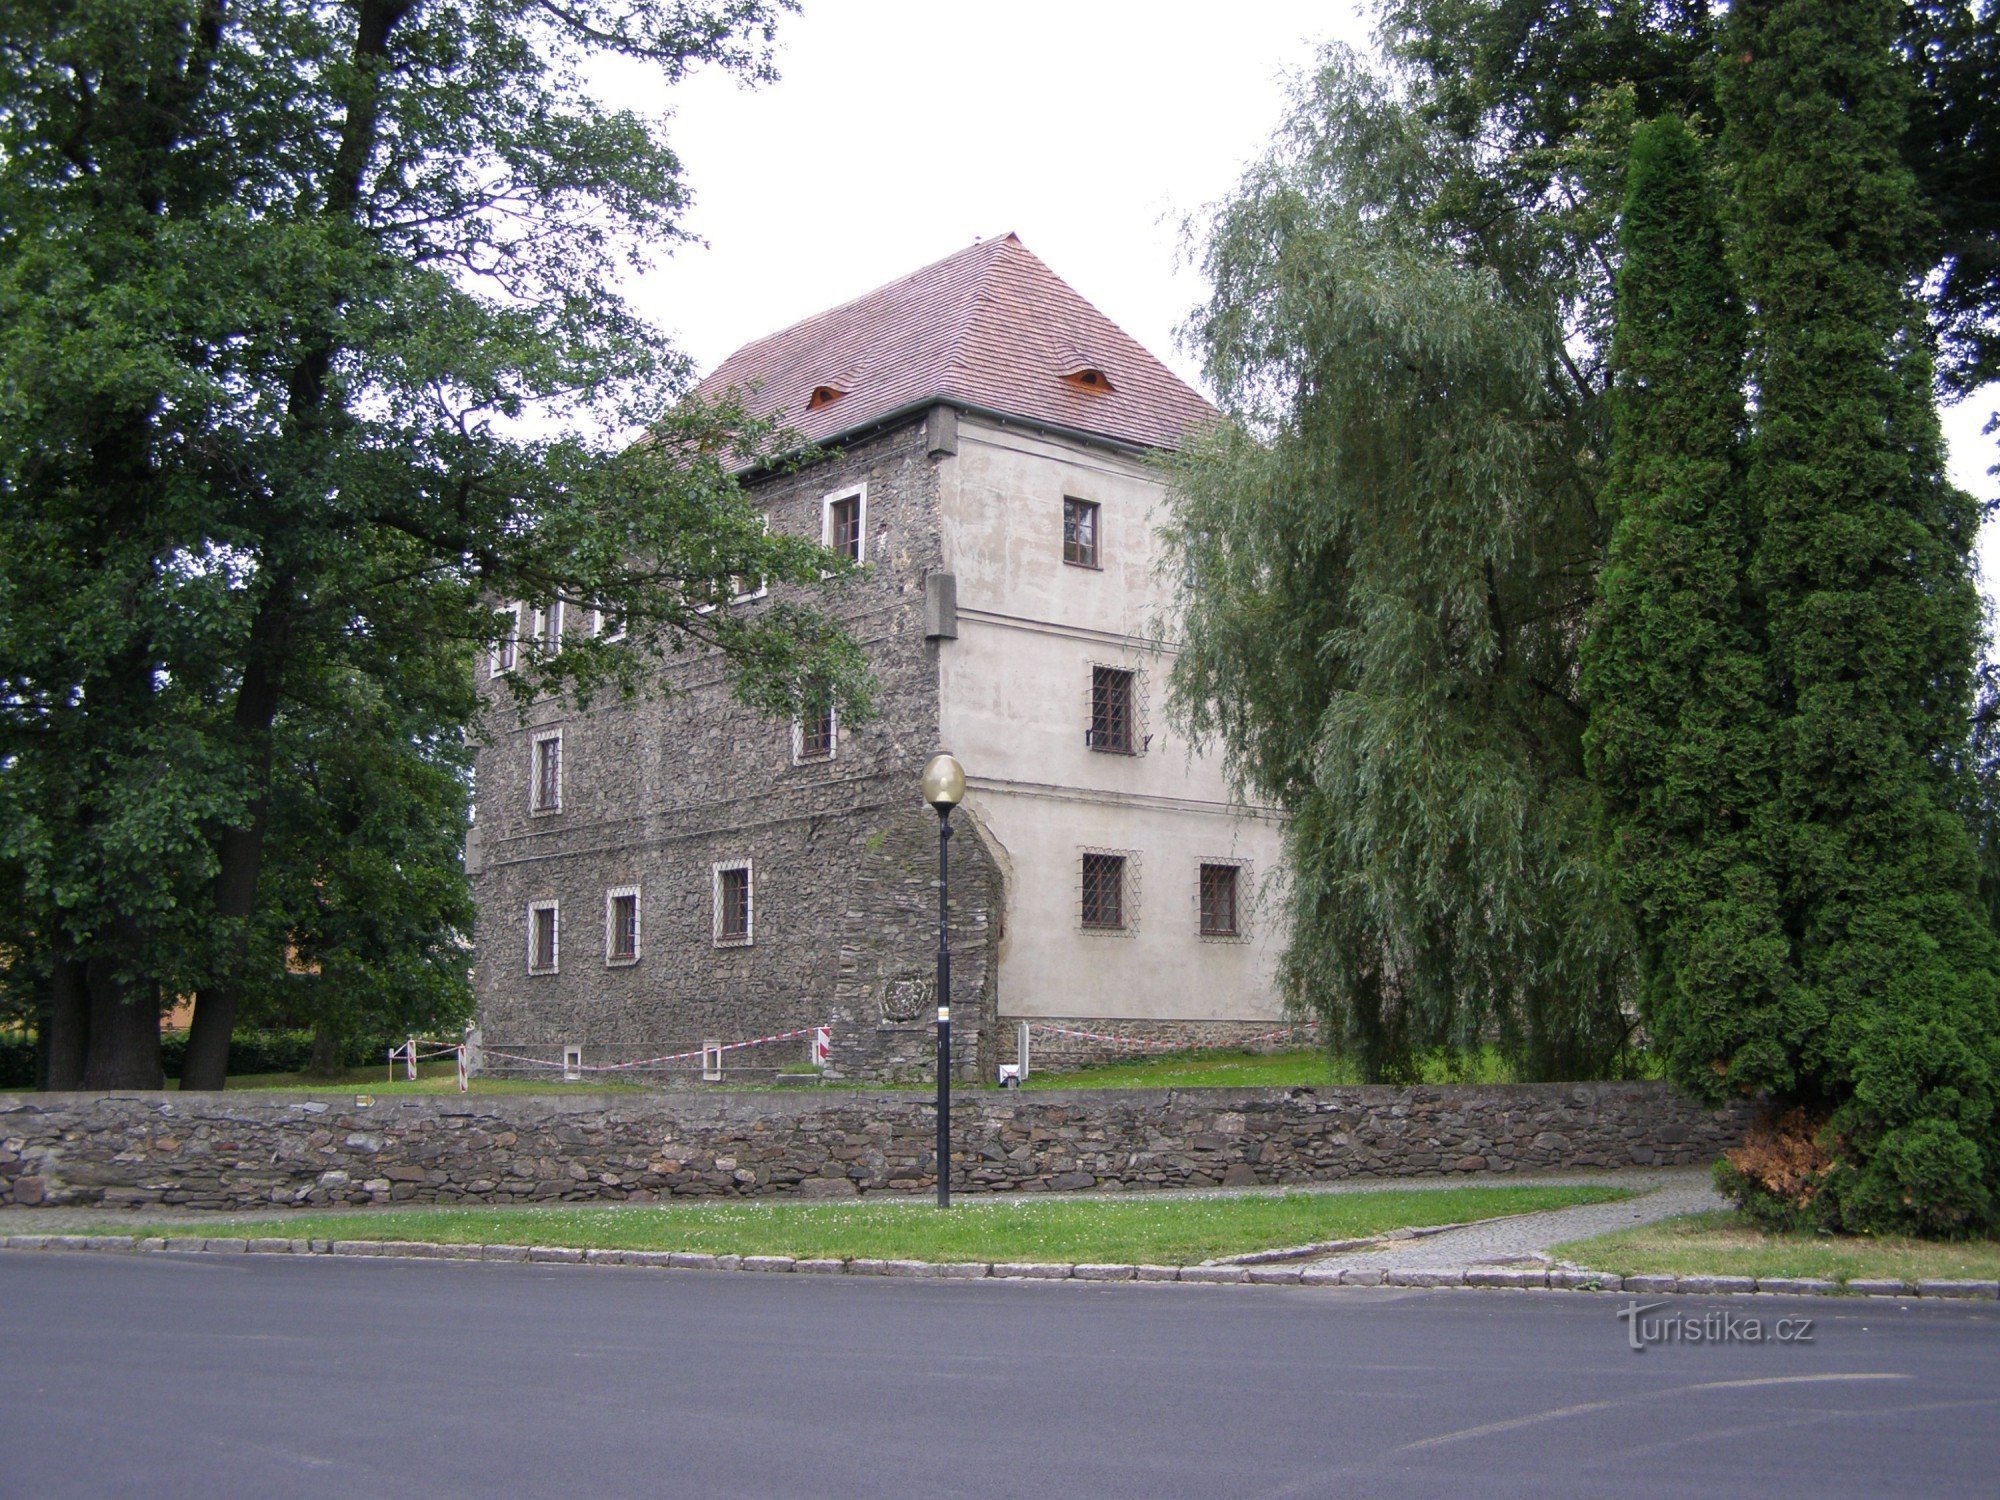 τουριστικό σταυροδρόμι Jeseník - υδάτινο φρούριο